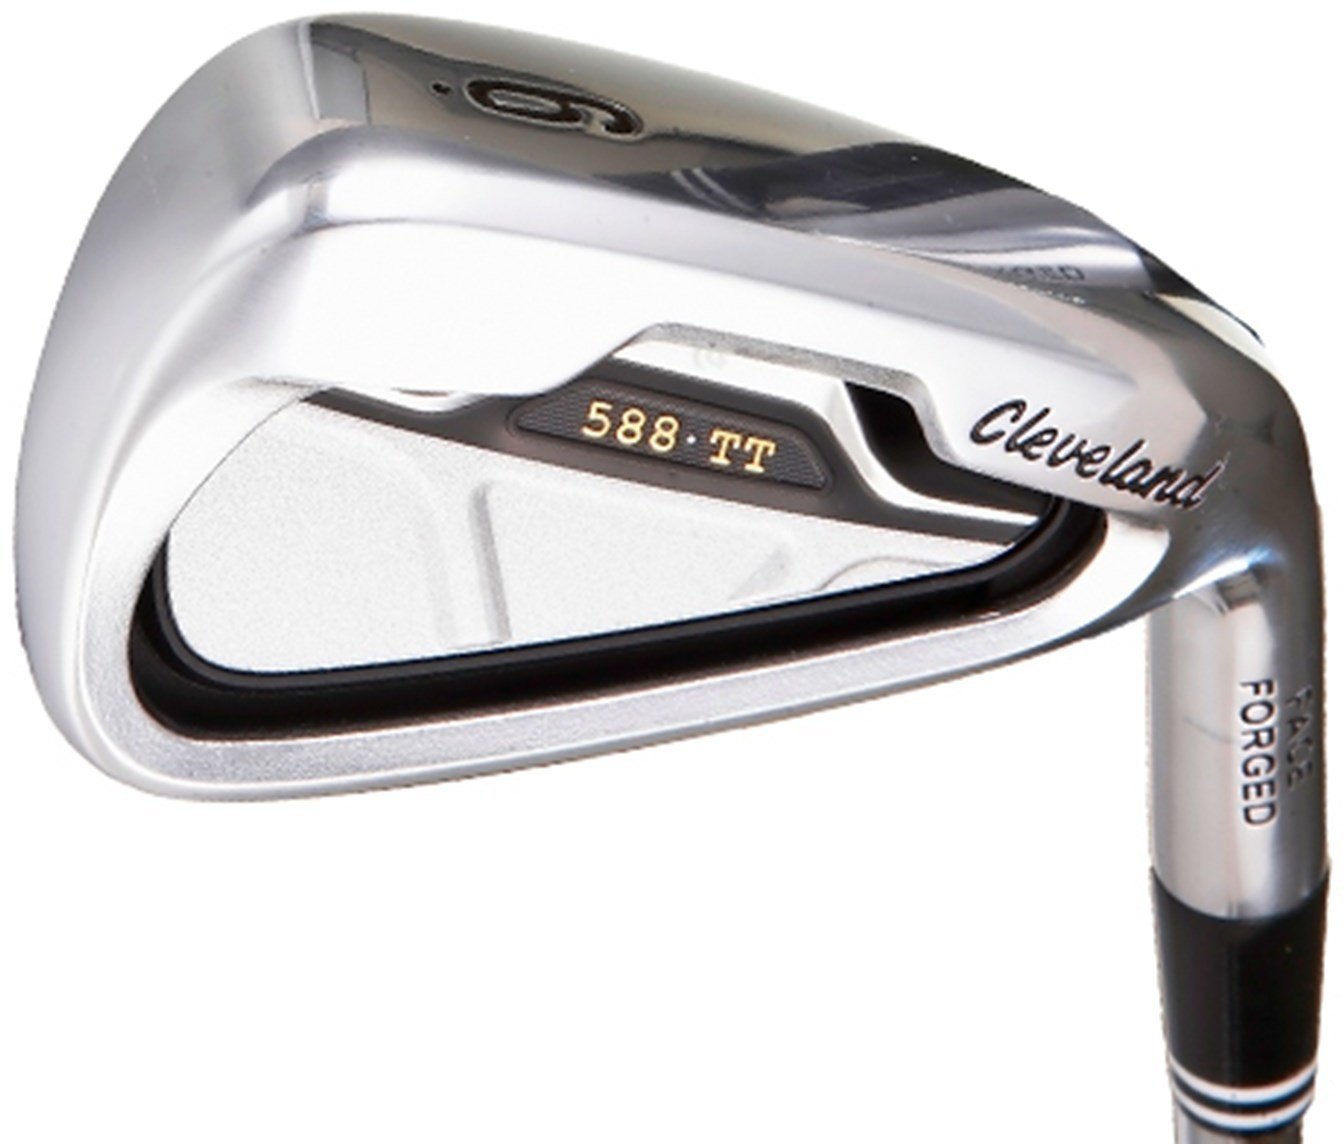 Club de golf - fers Cleveland 588 TT Iron Chrome Right Hand Regular 4-9